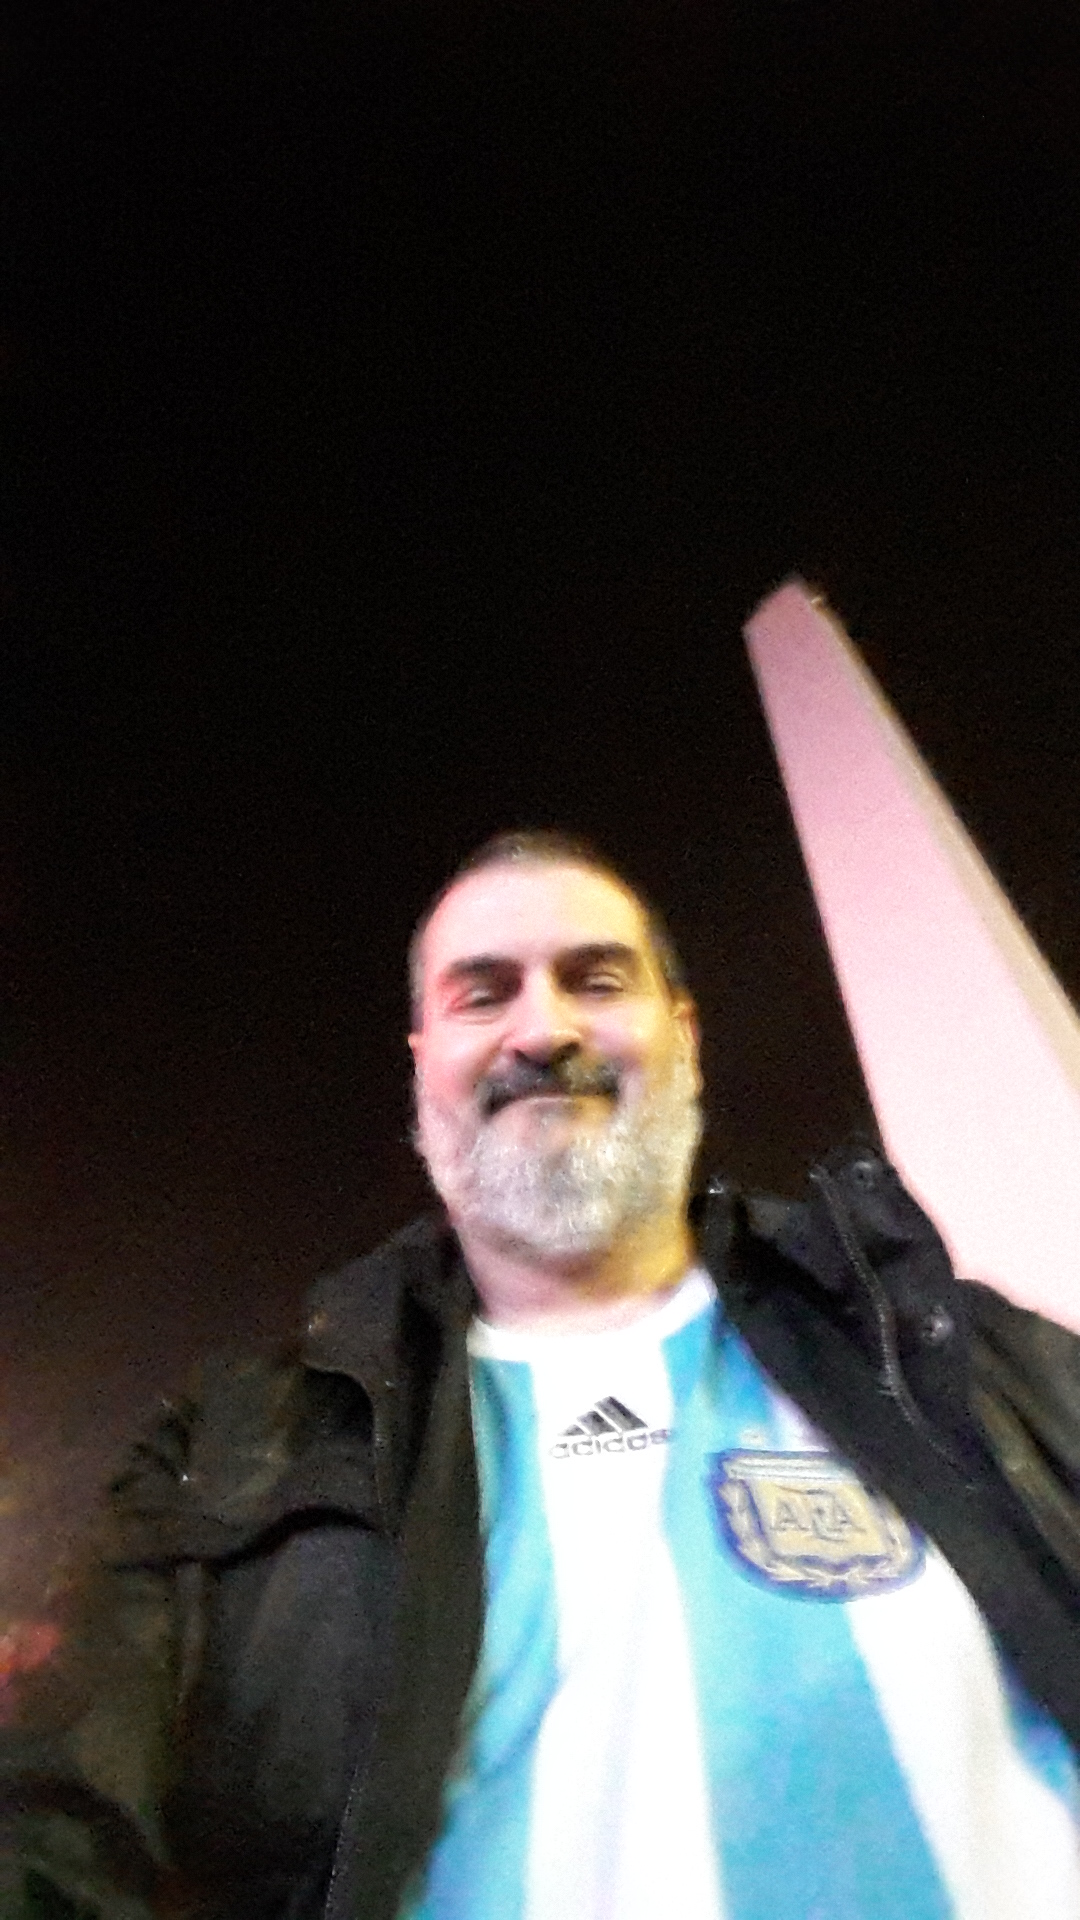 Autofoto en el Obelisco, Buenos Aires, 9 de julio de 2014.